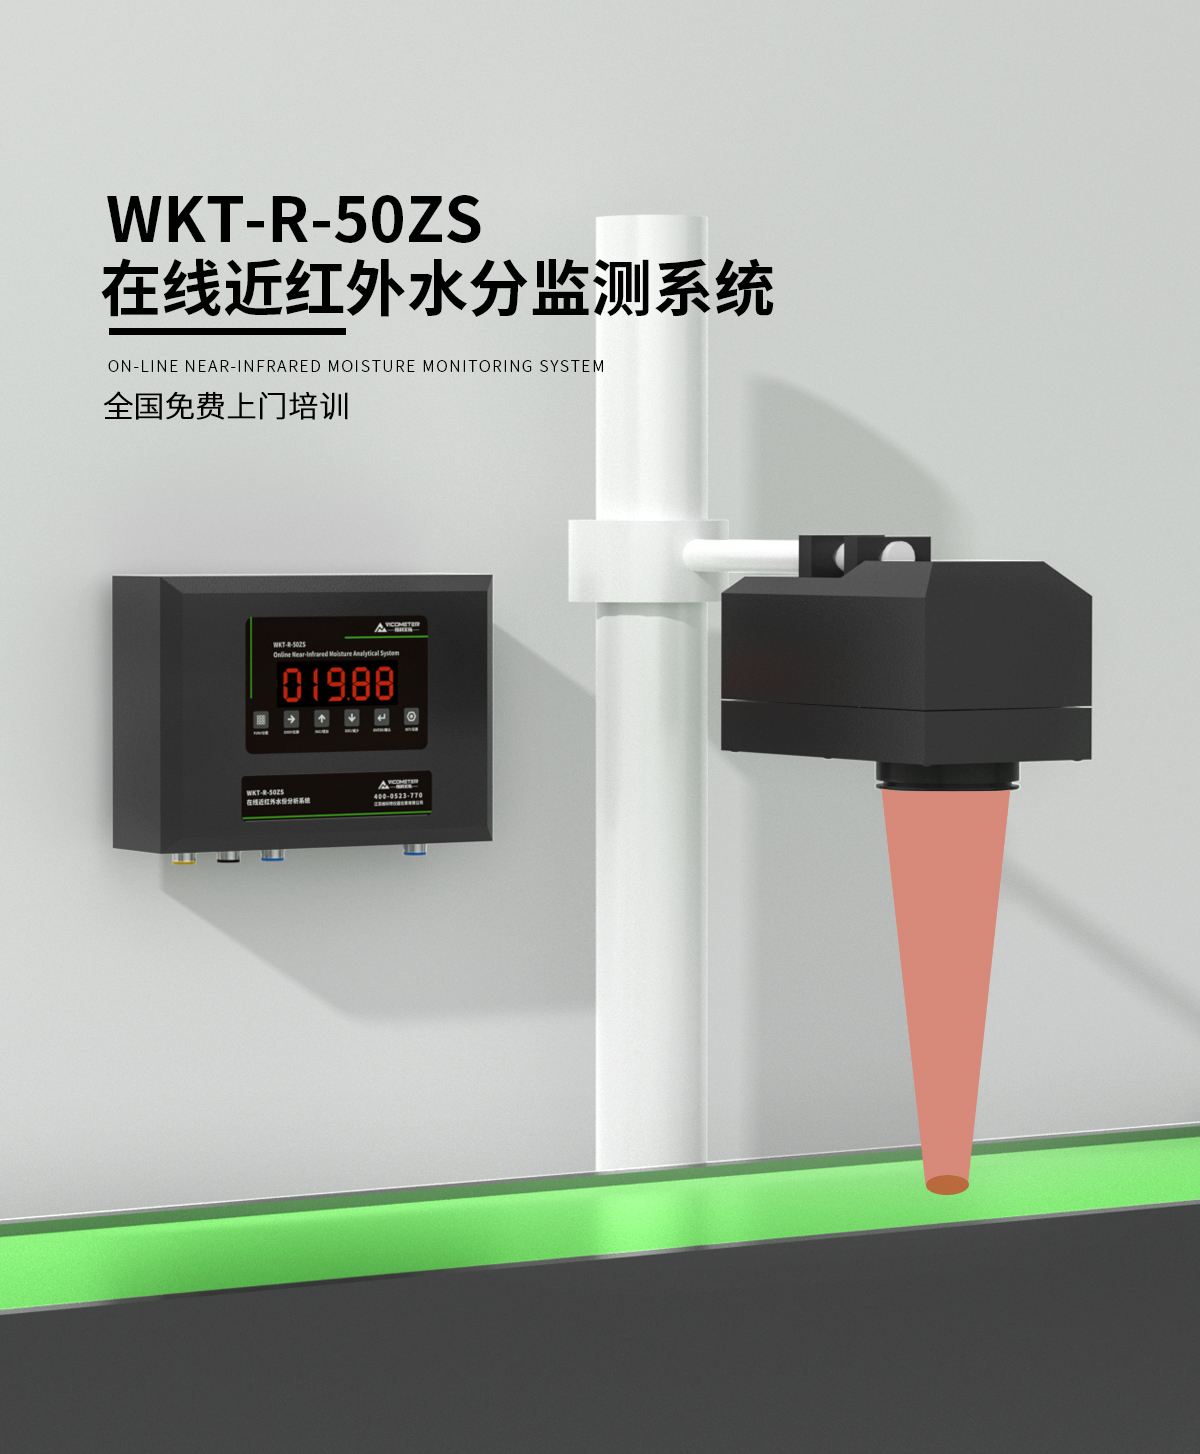 WKT-R-50ZS在线近红外水分监测系统_01.jpg